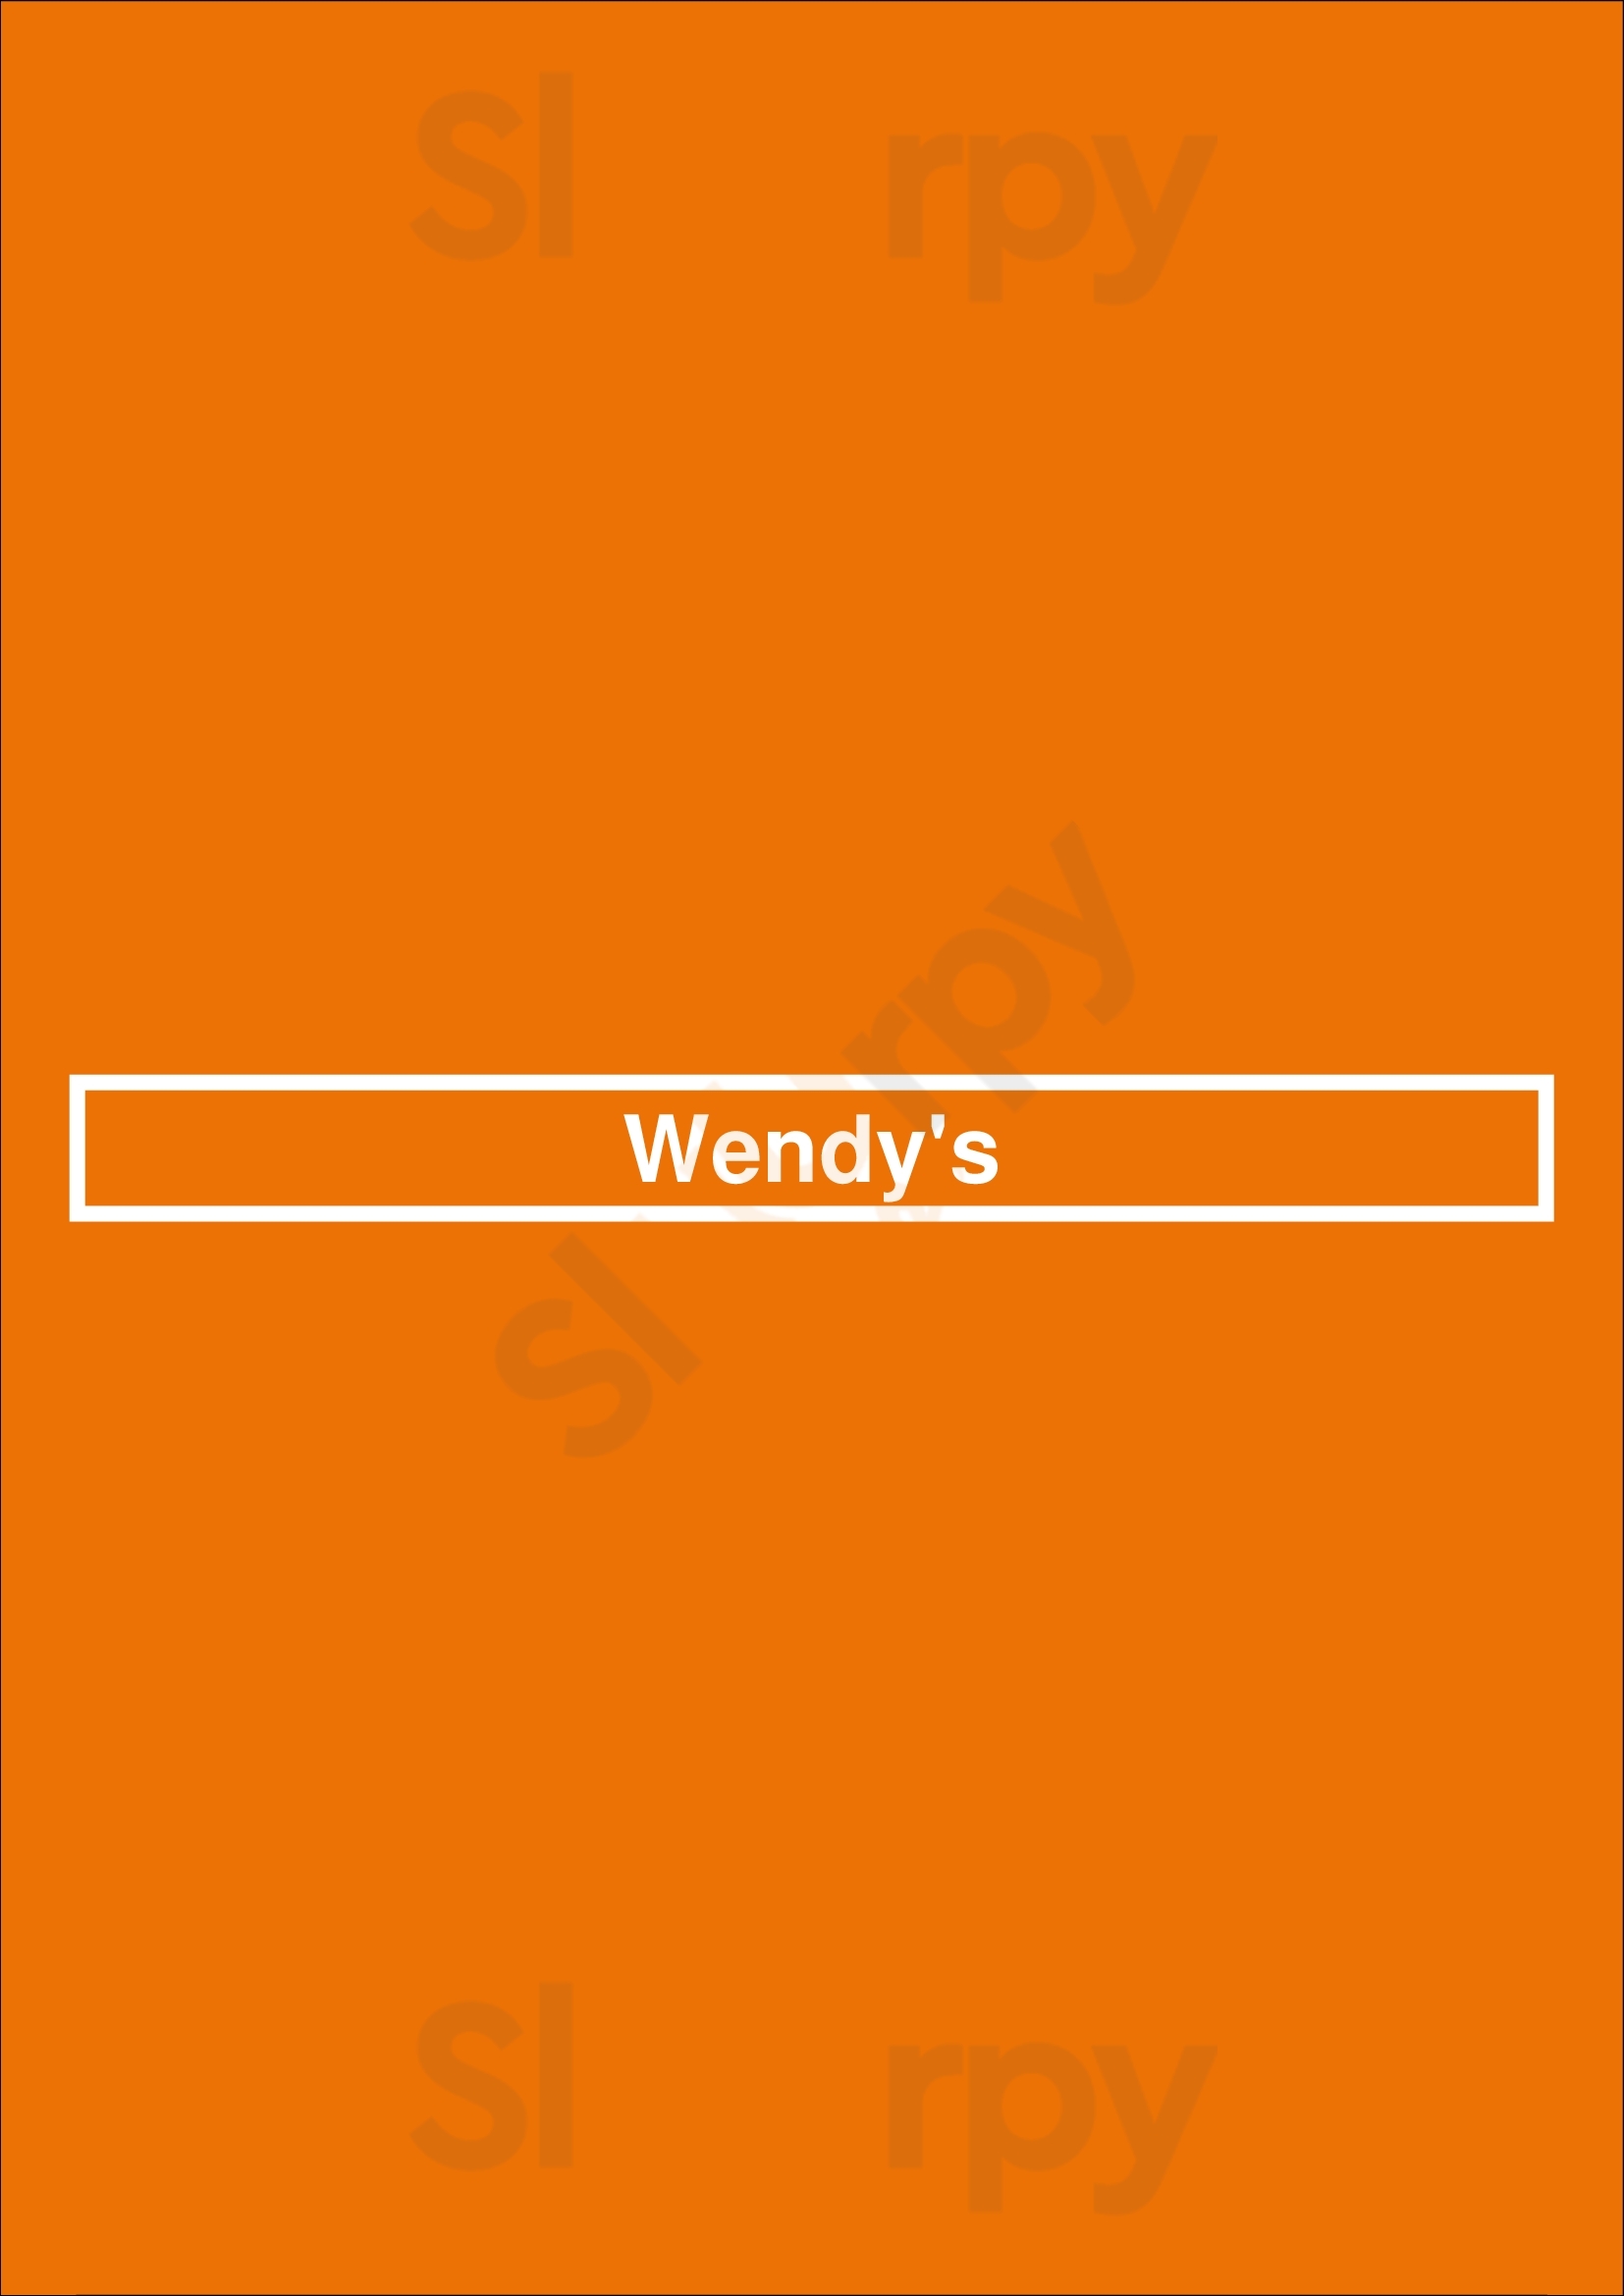 Wendy's Henderson Menu - 1